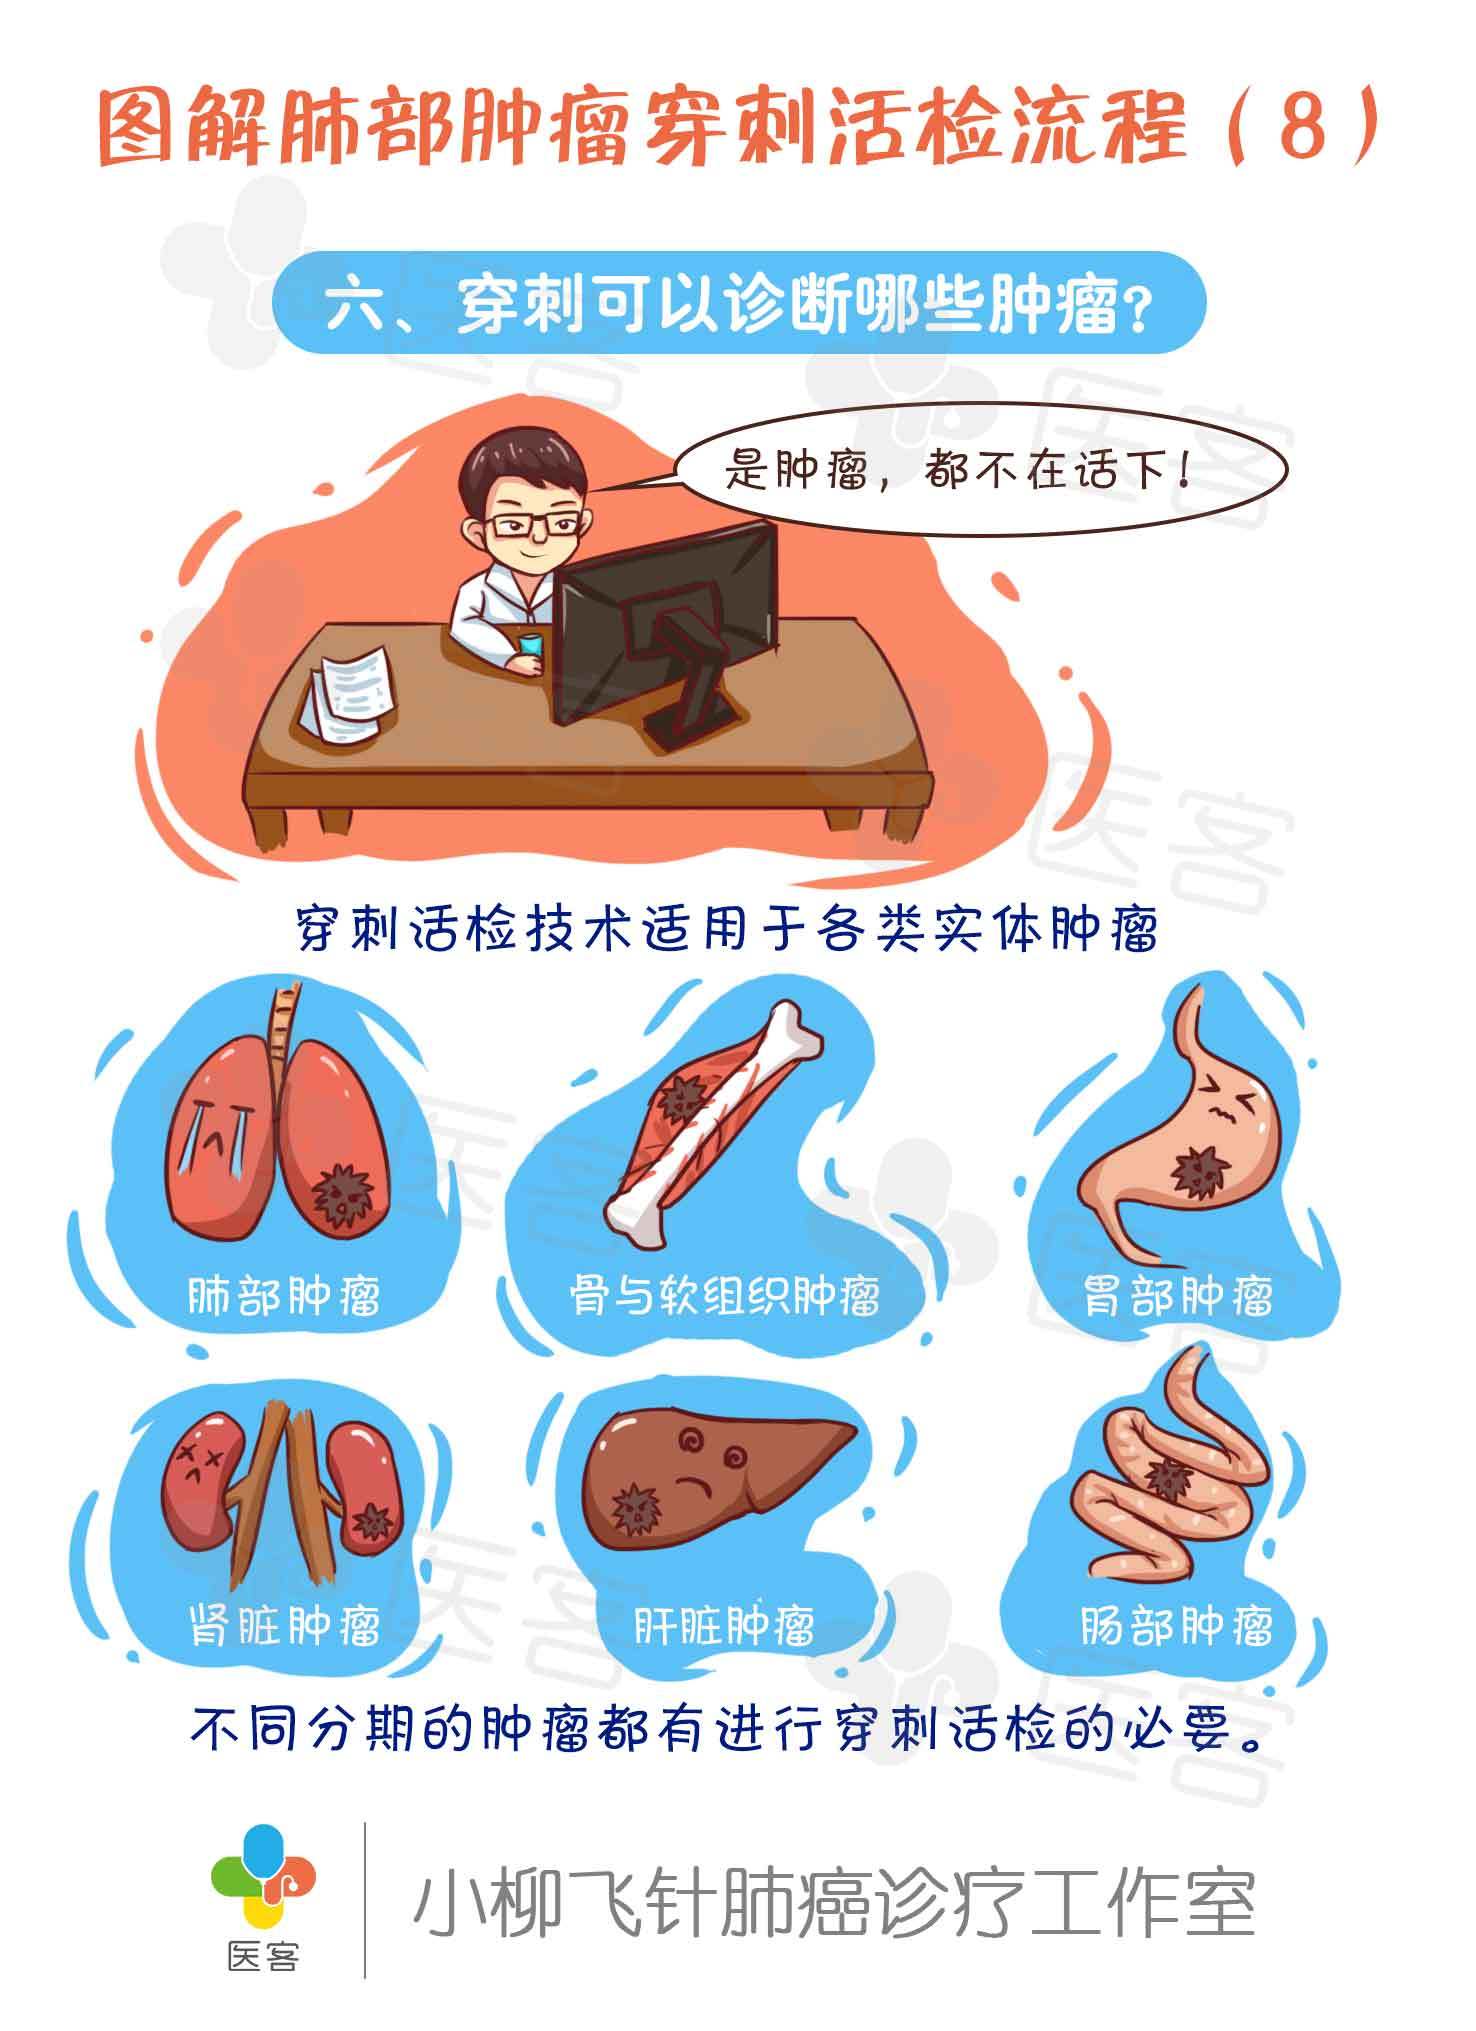 【医客工作室】医疗科普漫画:图解肺部肿瘤穿刺活检流程